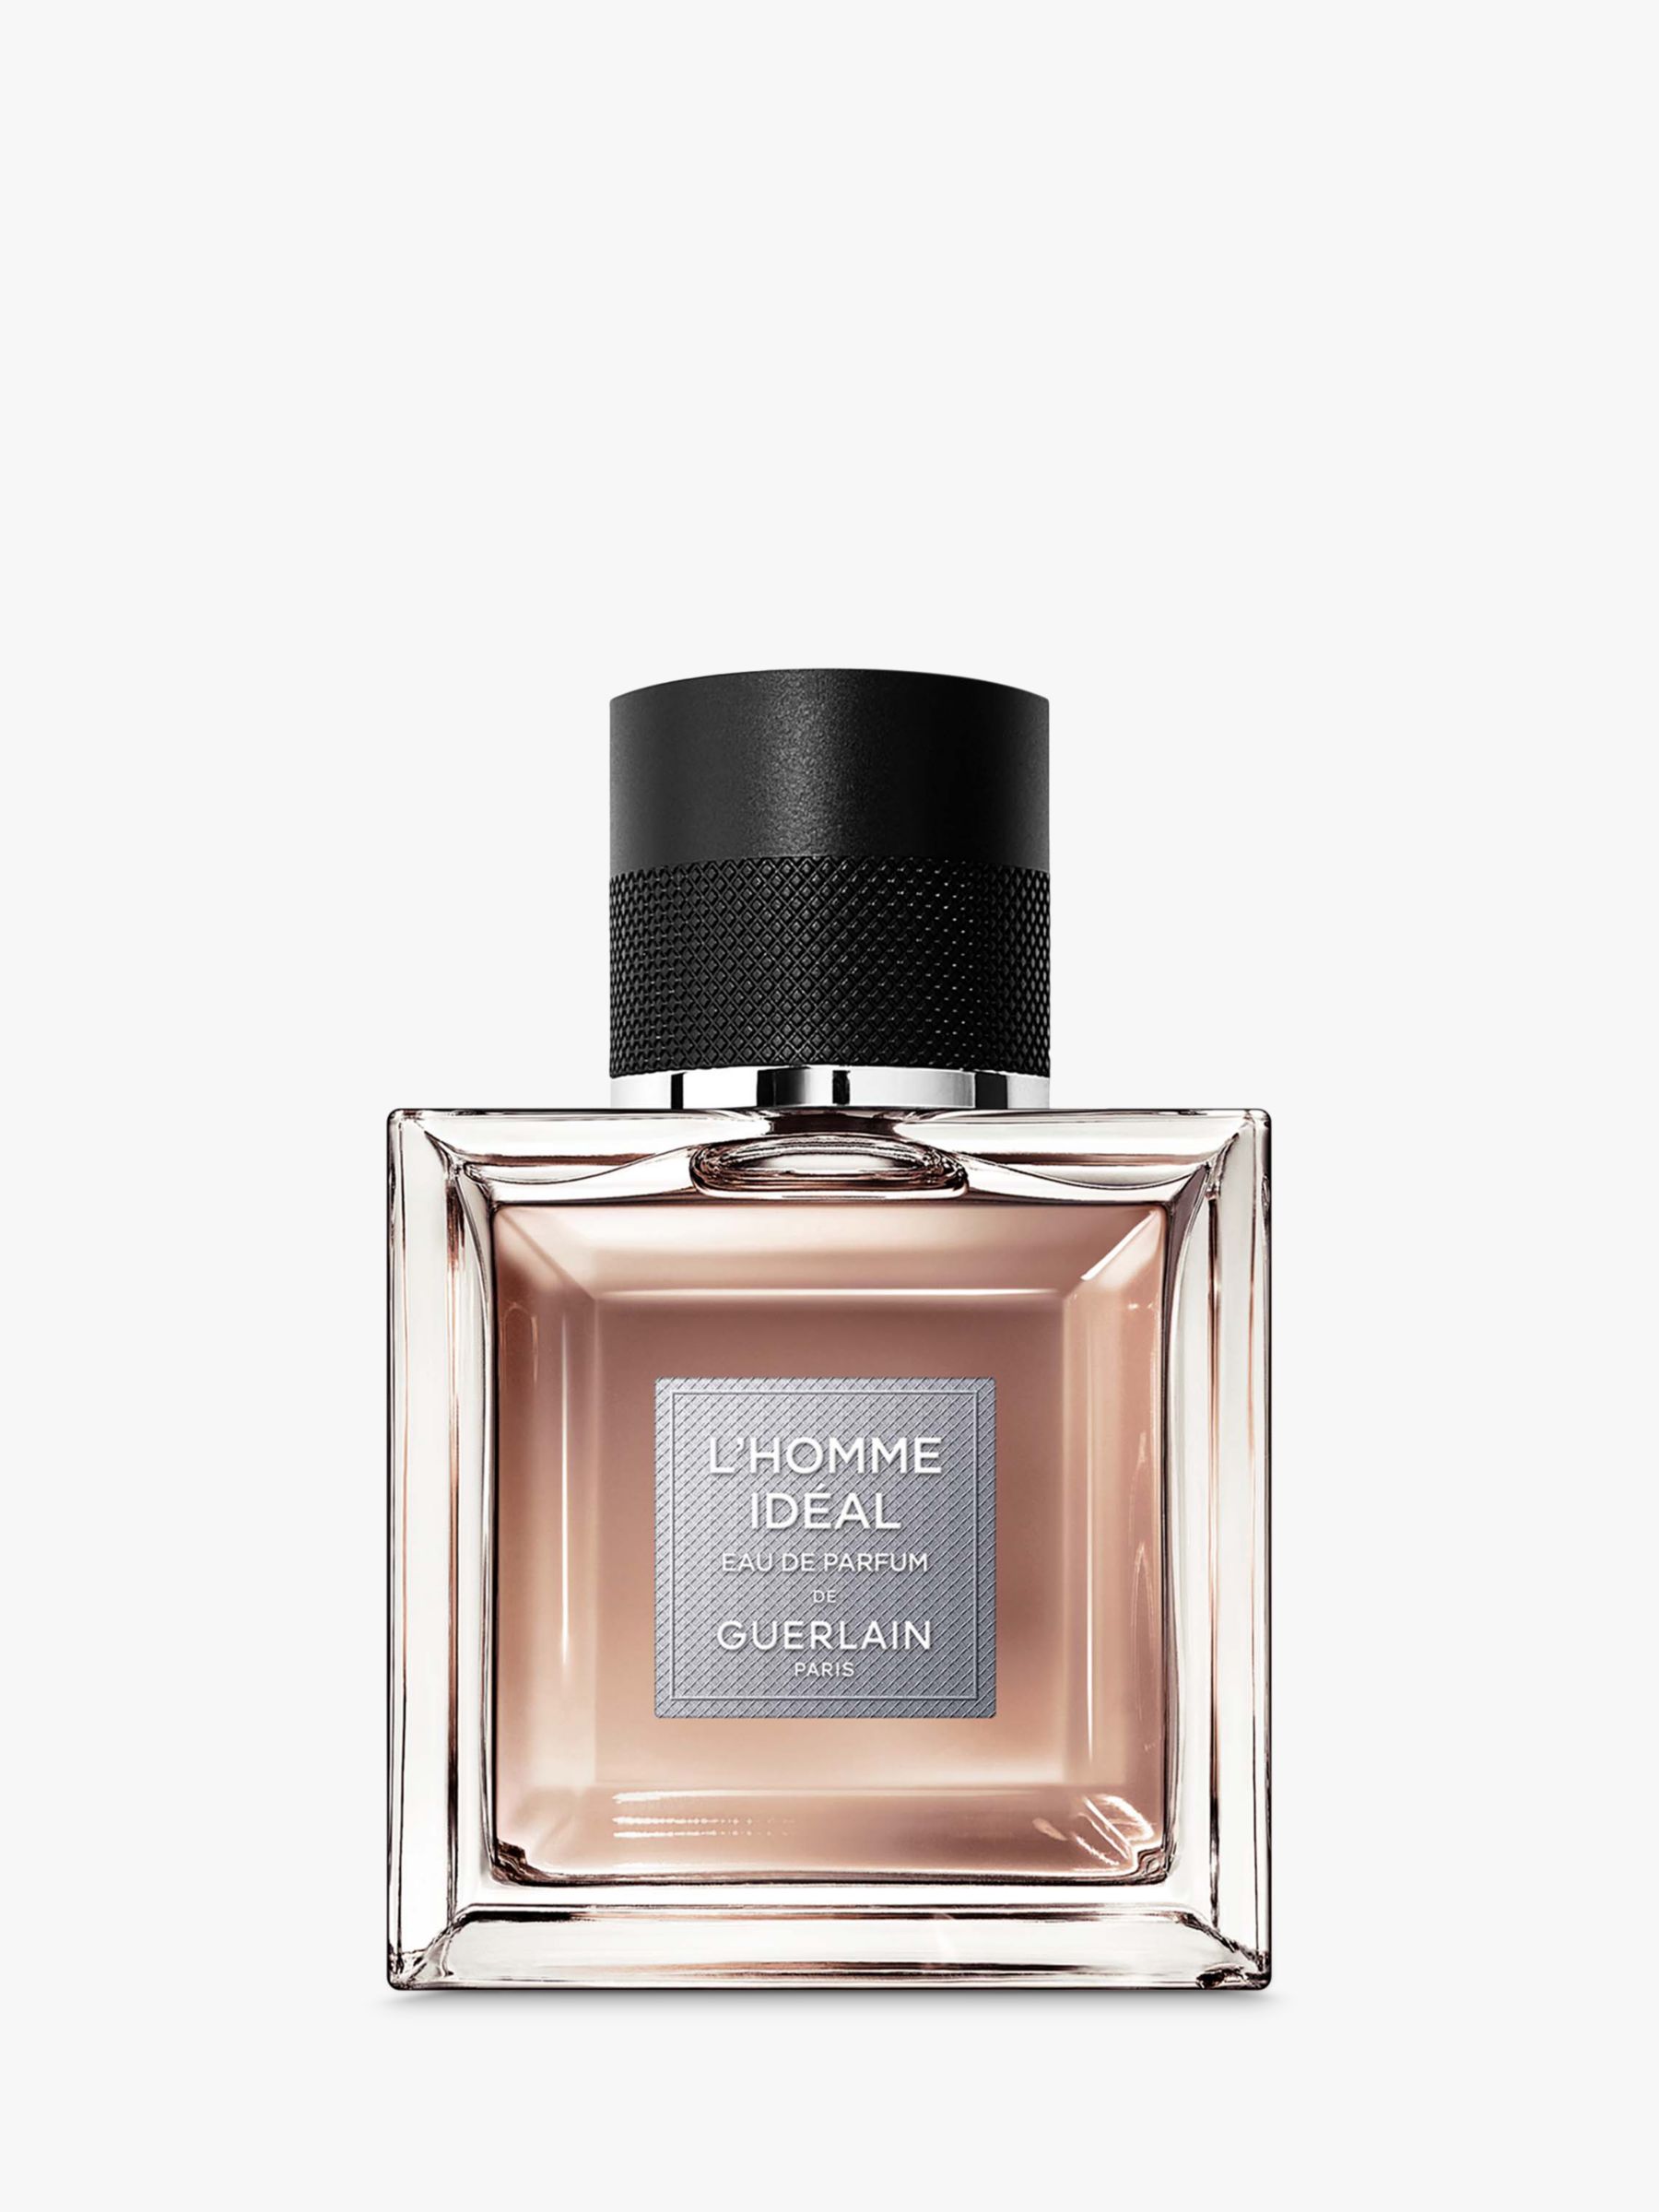 Guerlain L'Homme Ideal Eau de Parfum, 50ml at John Lewis & Partners